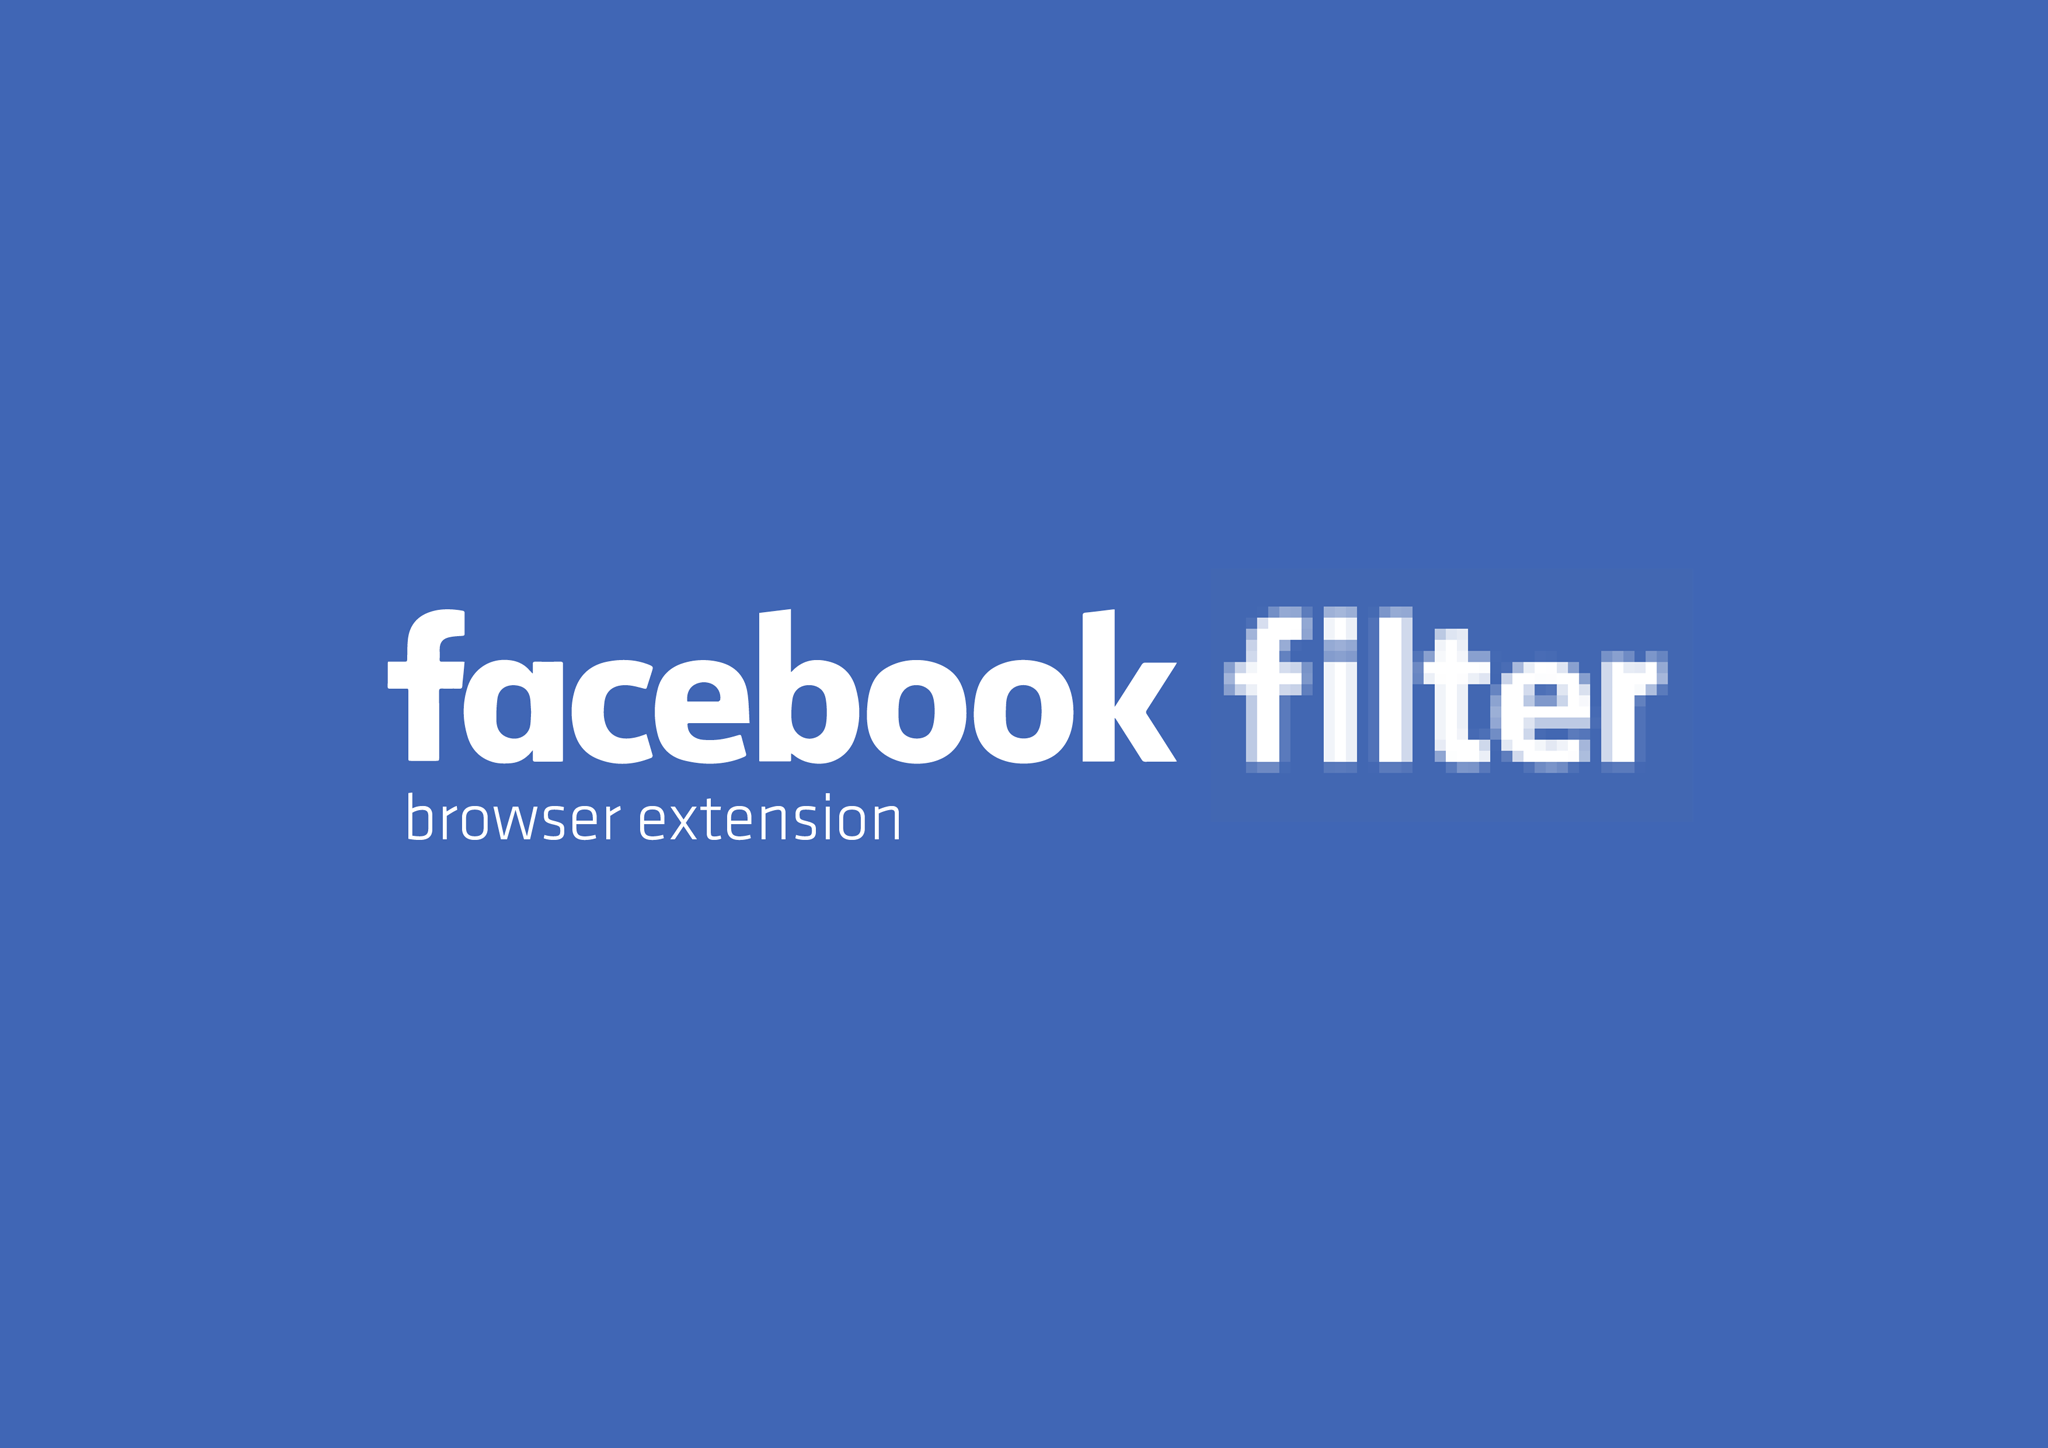 Facebook filter identity